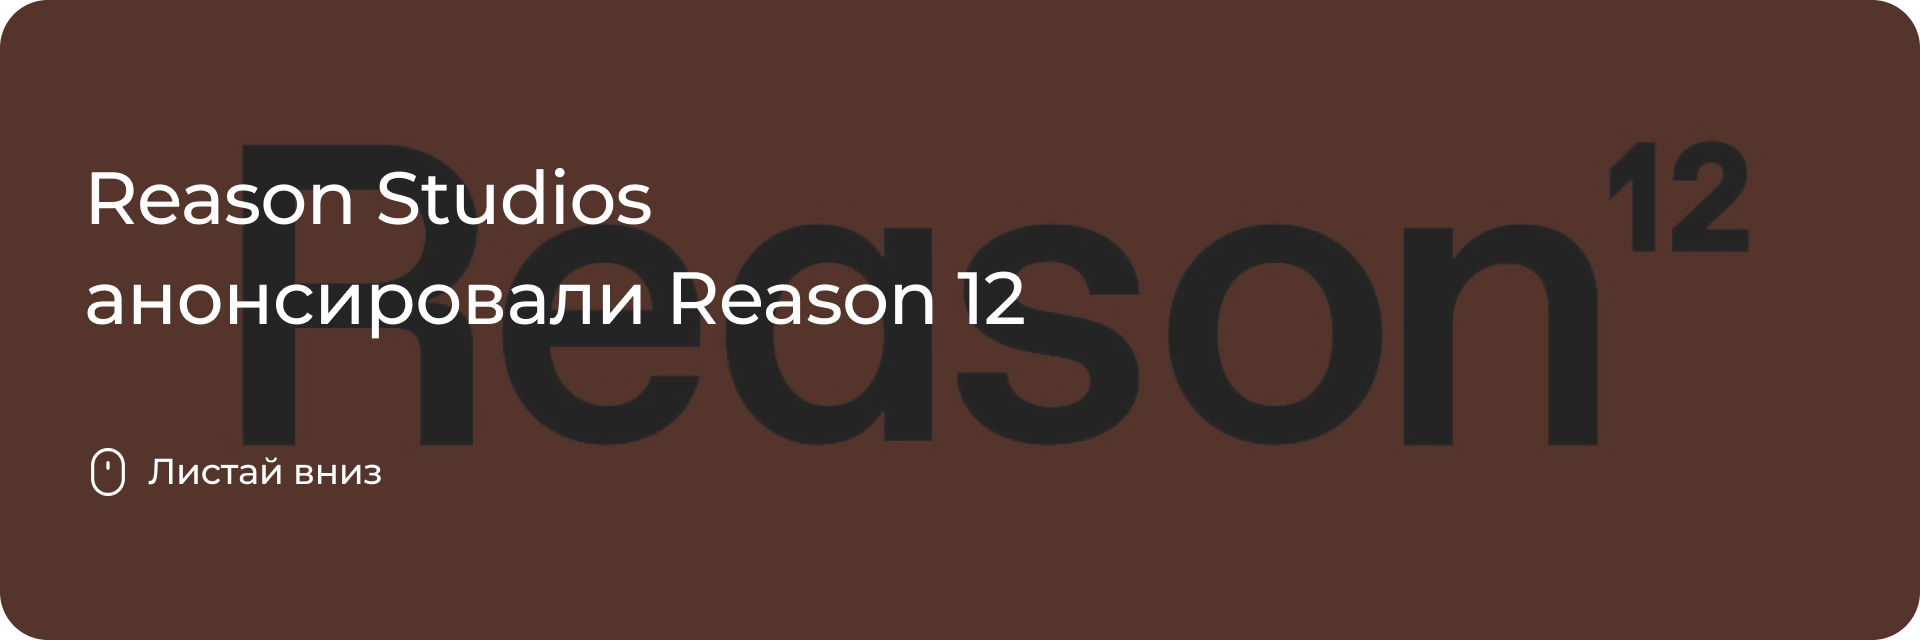 Reason Studios анонсировали Reason 12